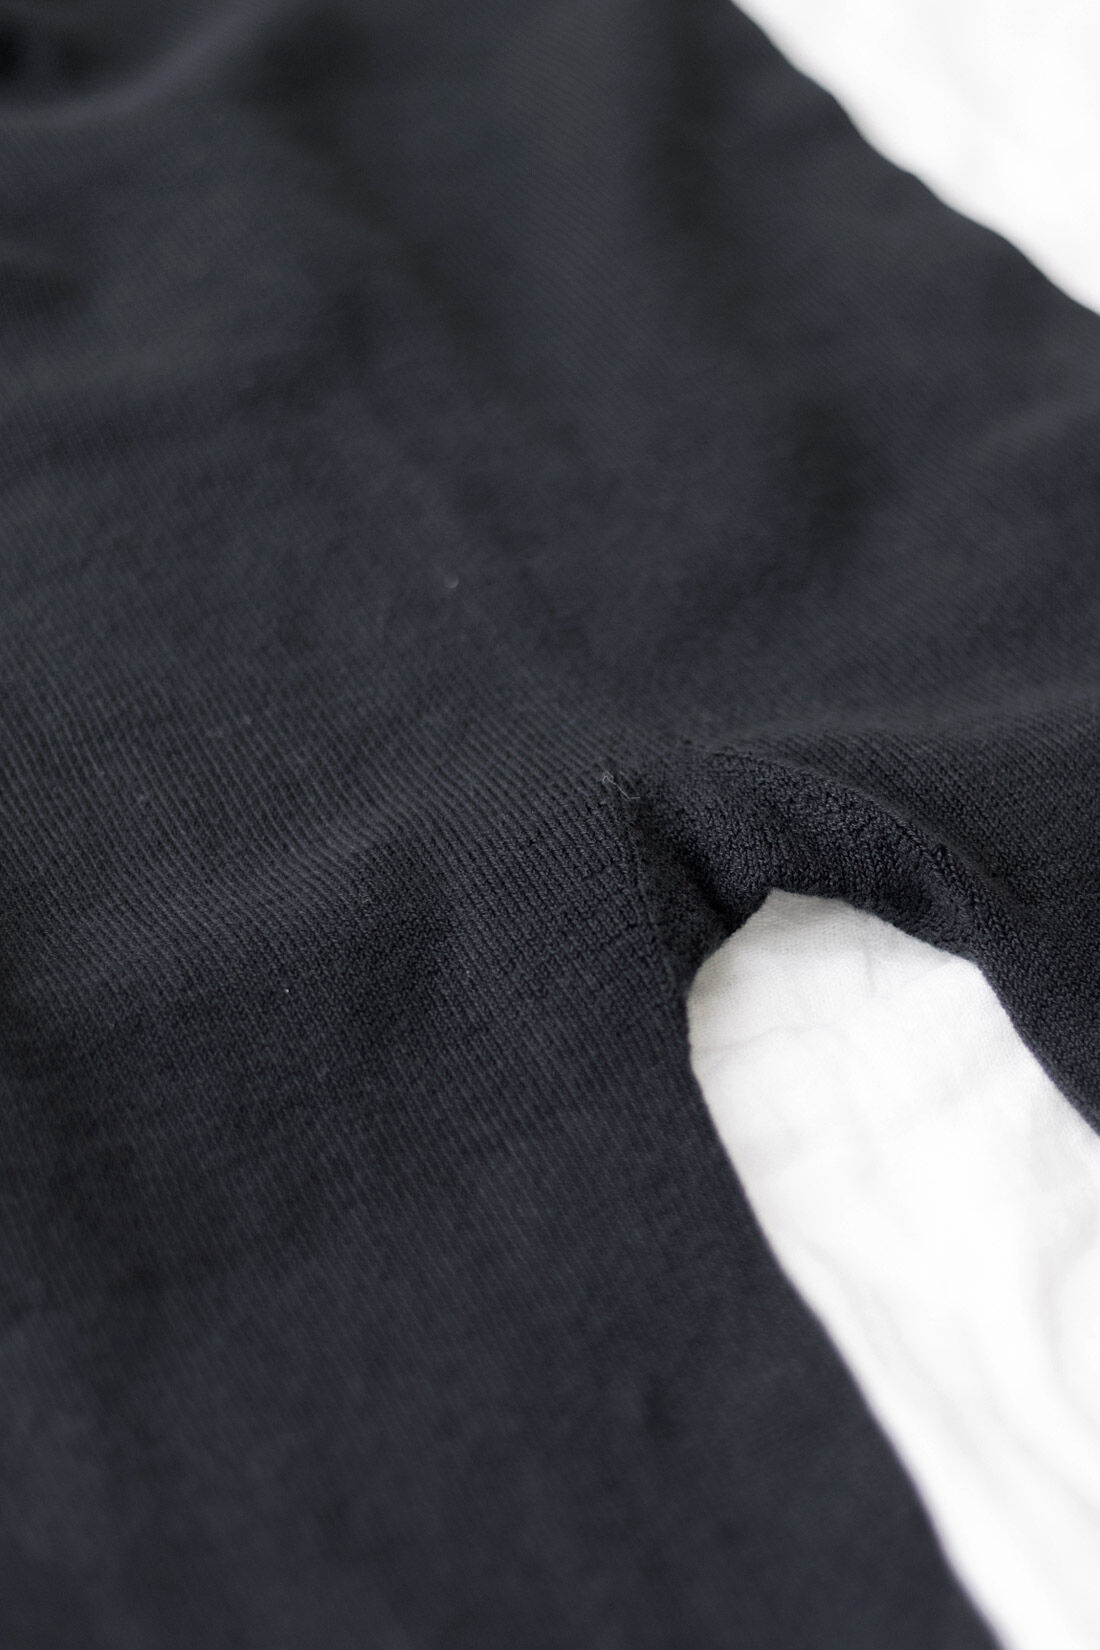 フェリシモMama|Moredde　マタニティ・産後使える　ホールガーメントⓇで心地いい綿混レギンス|無縫製で立体的に編み立てています。